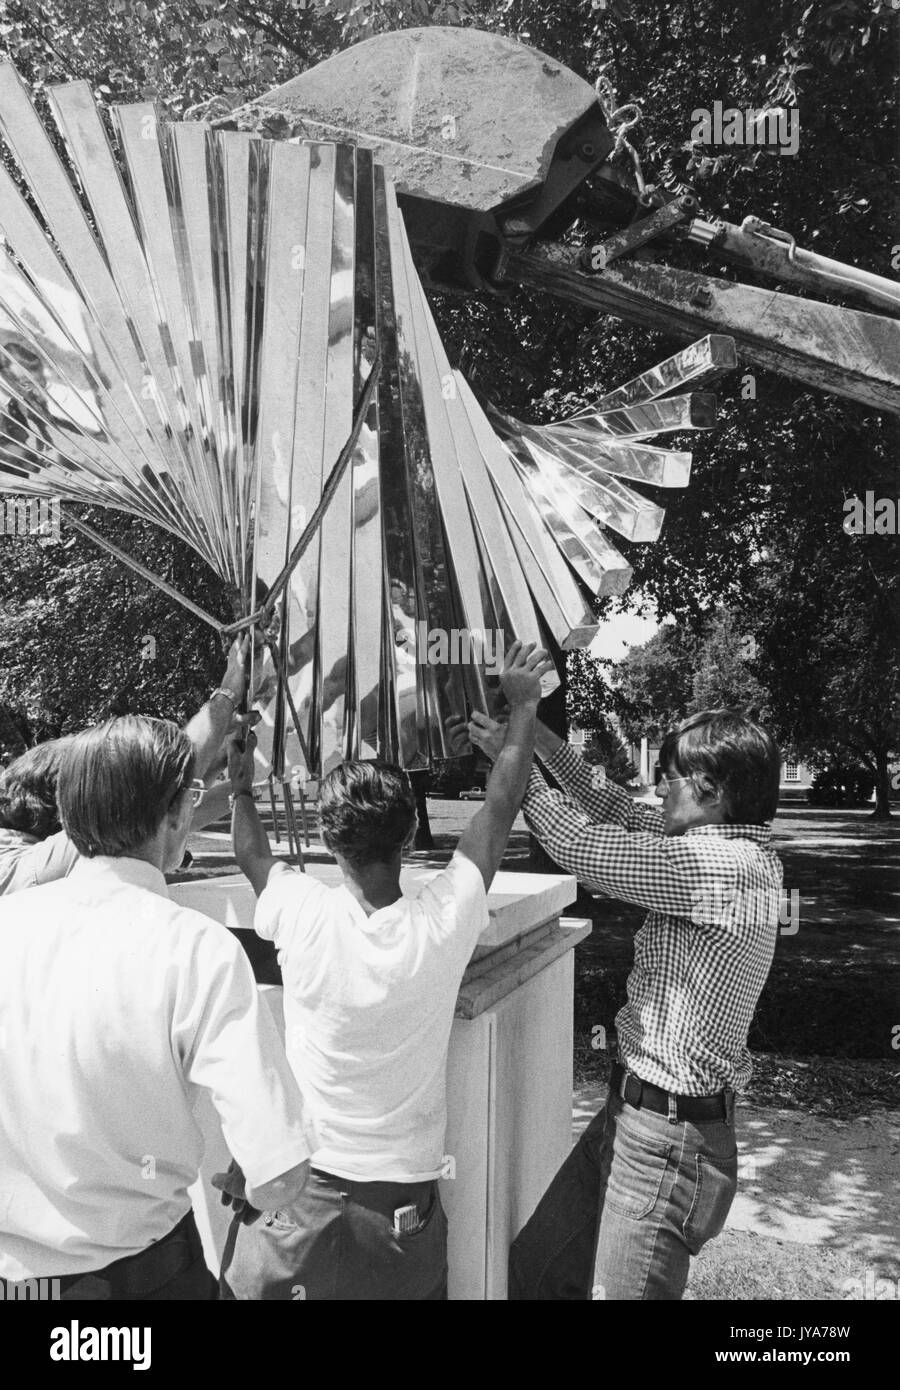 Construcción de la escultura centenario, creada por el escultor David Brown para conmemorar el centenario de la fundación de la Universidad Johns Hopkins en el campus de Homewood de la Universidad de Baltimore, Maryland. 1976. Foto de stock